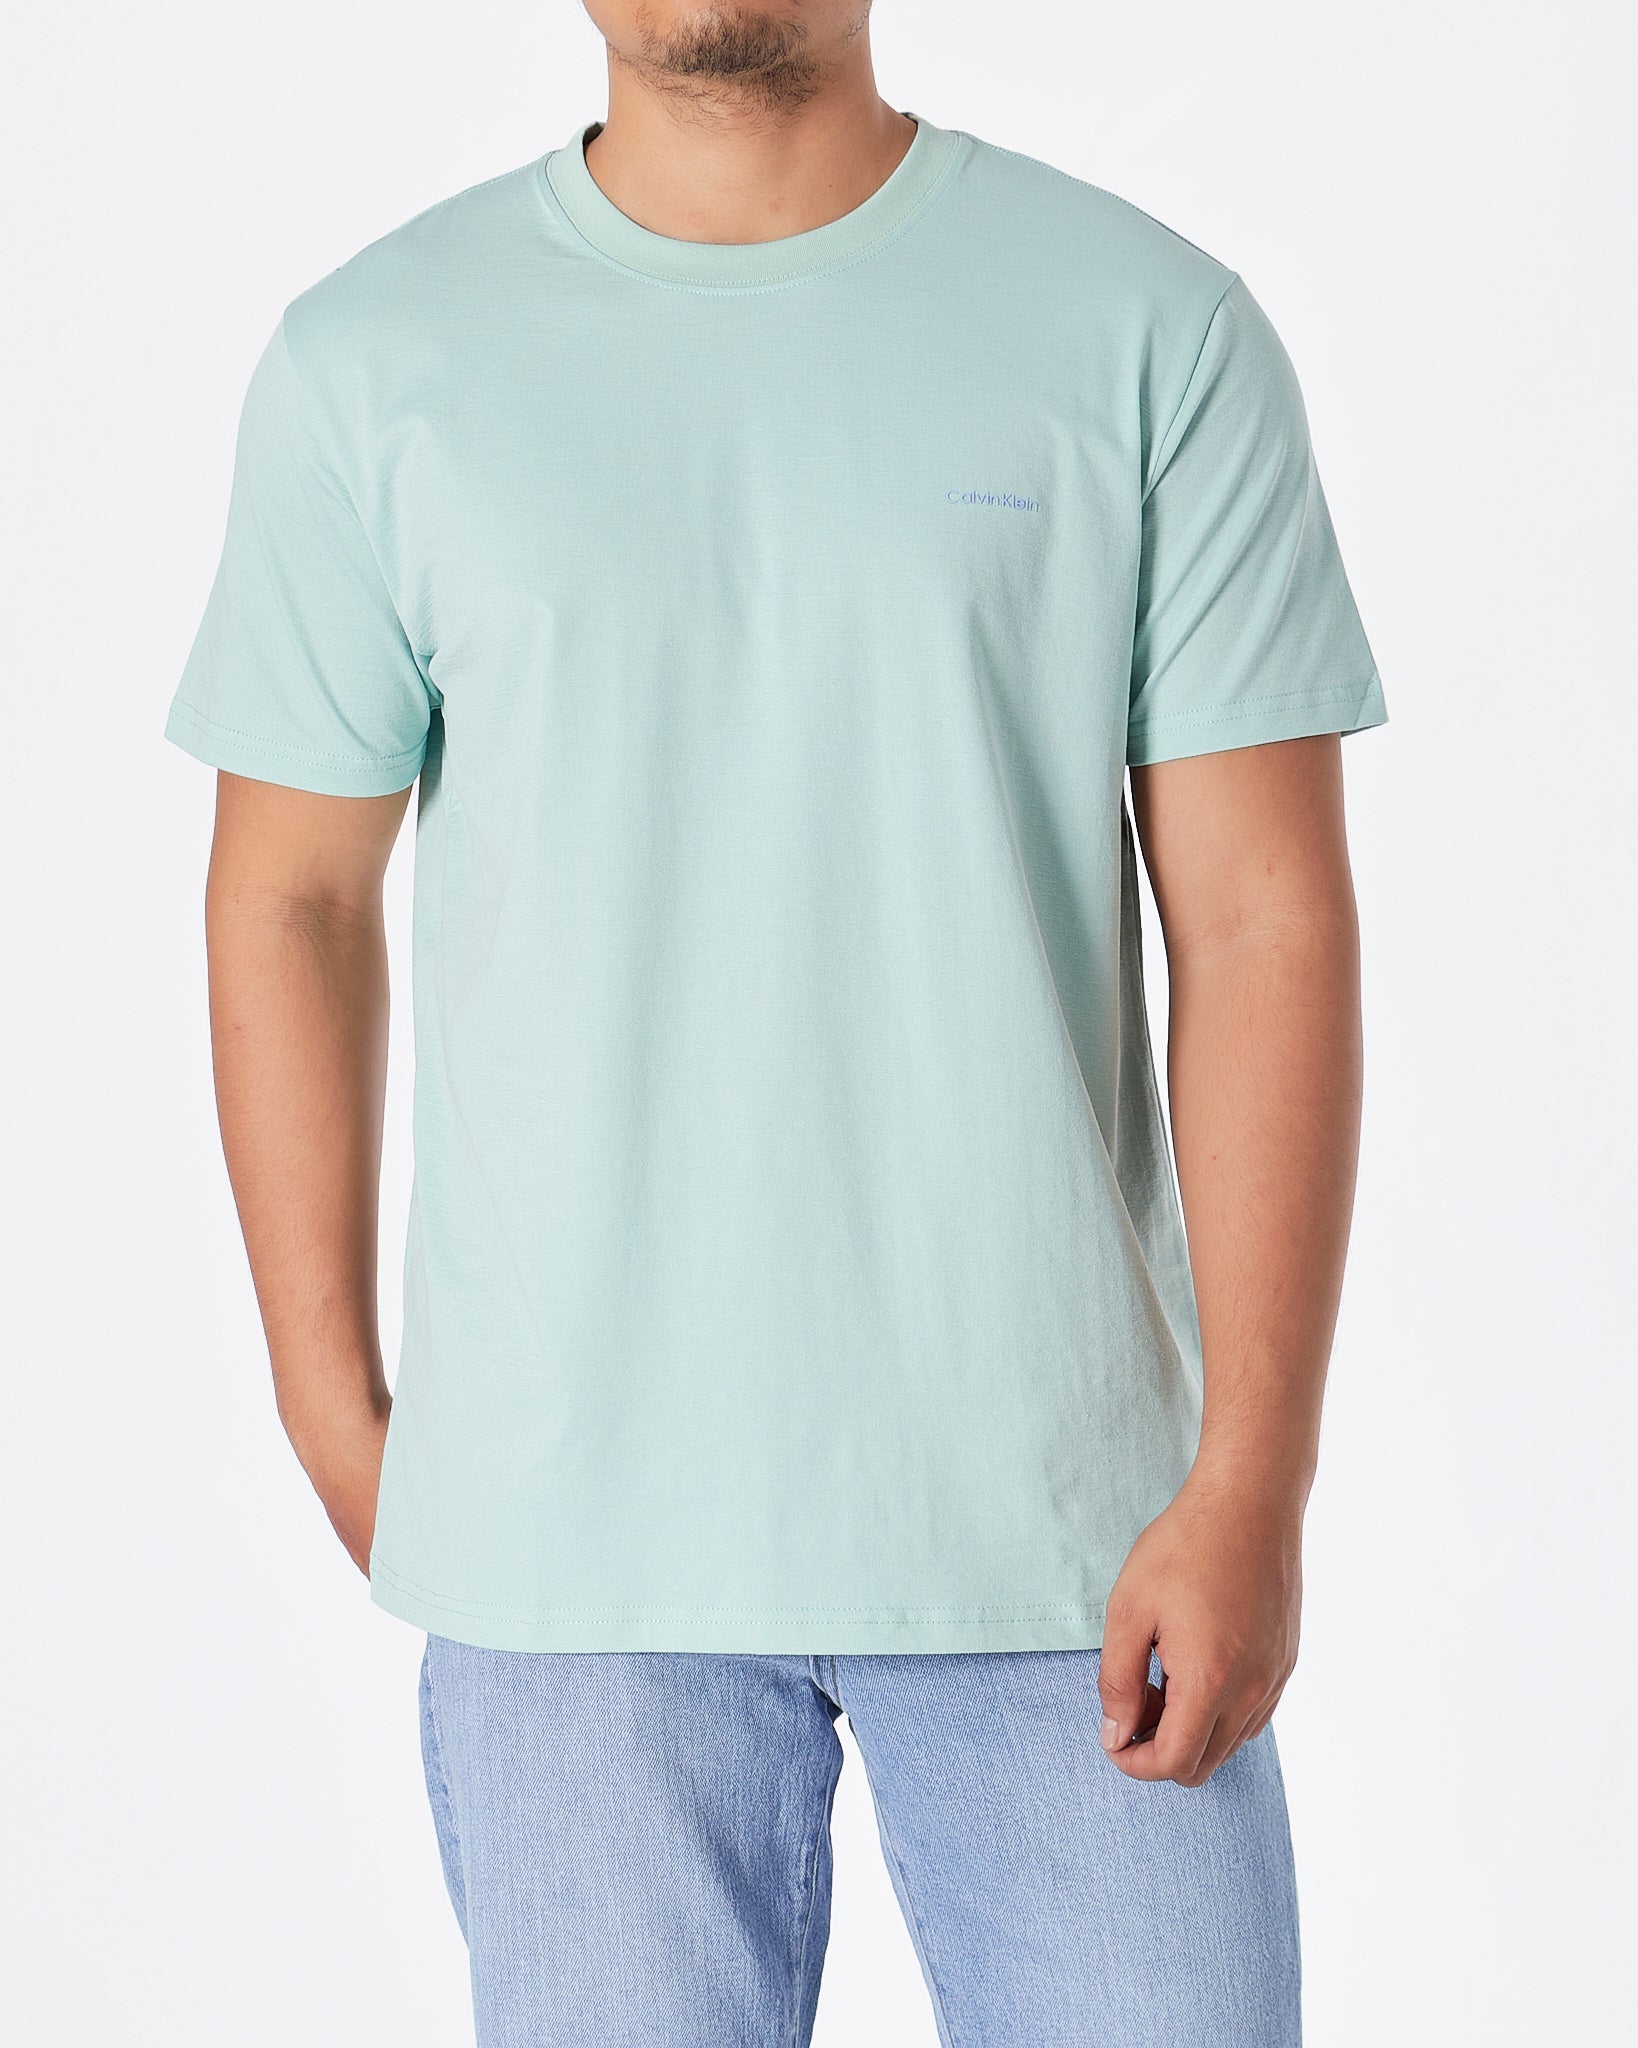 MOI OUTFIT-CK Plain Color Men Green T-Shirt 15.90